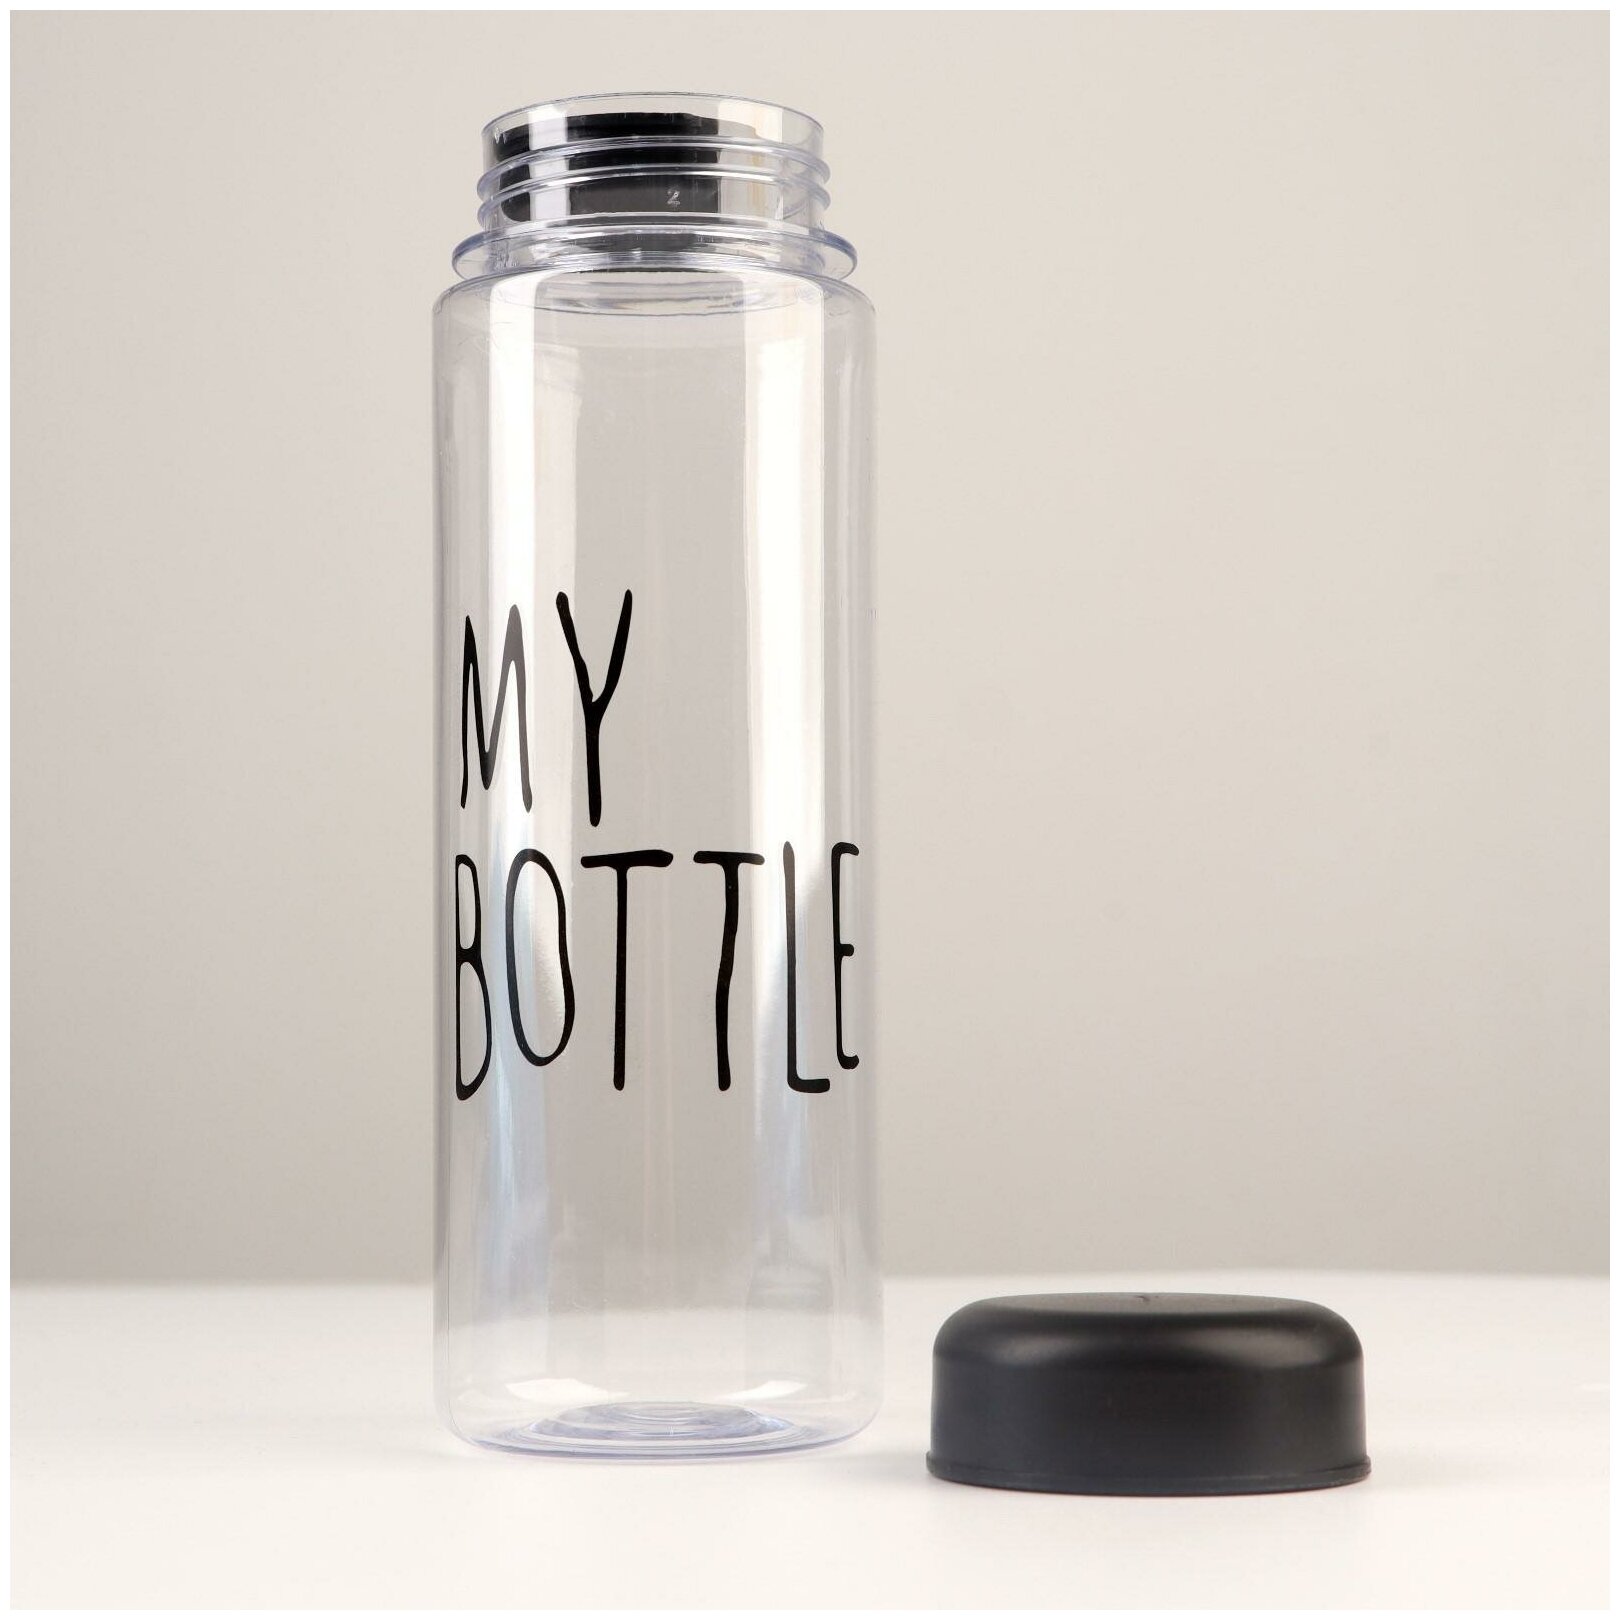 Бутылка для воды "My bottle", объем 500 мл, размер 19 х 6.5 см, цвет черный